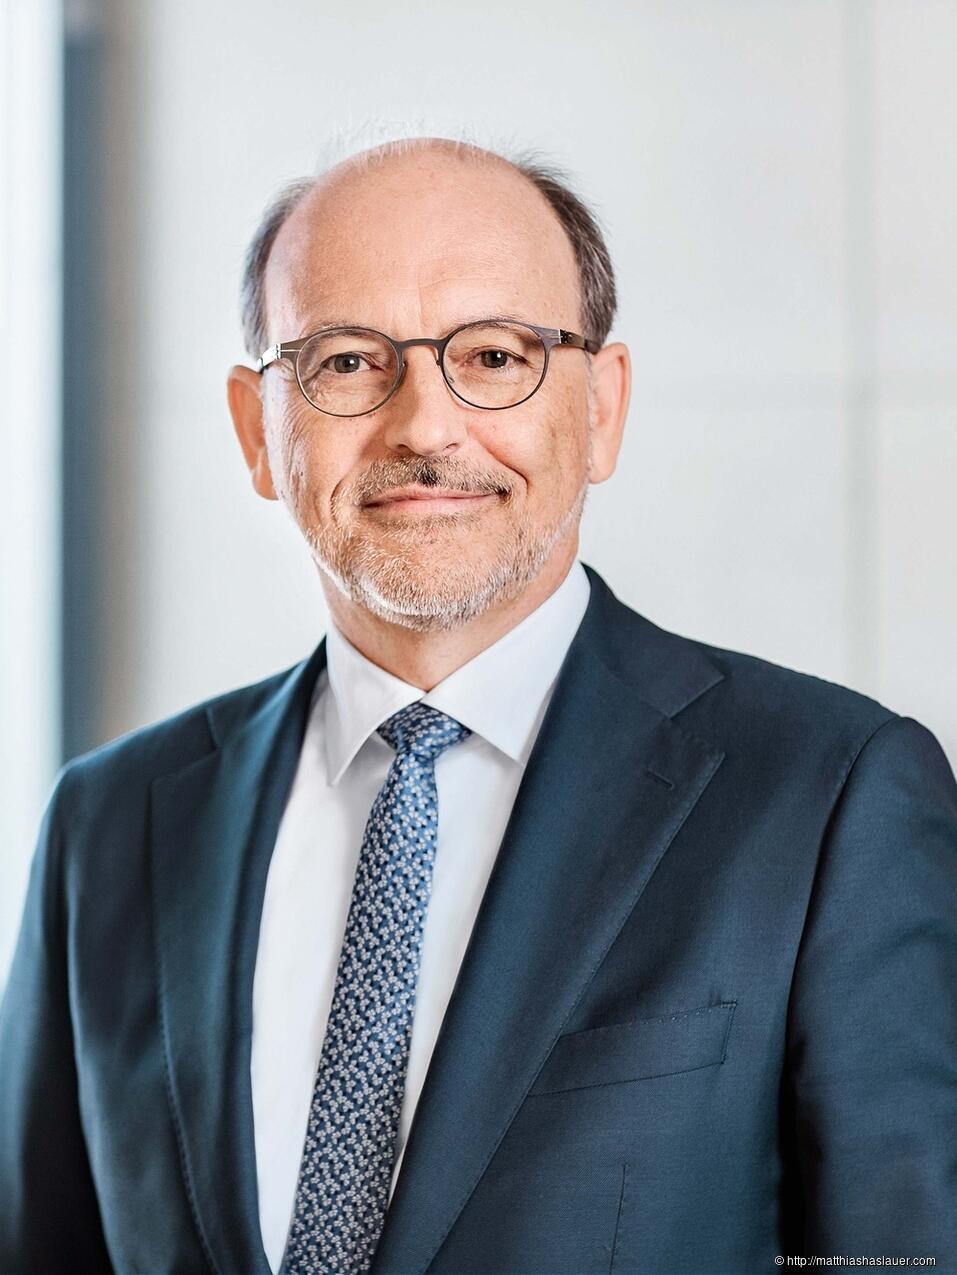 Thomas Groß, CEO